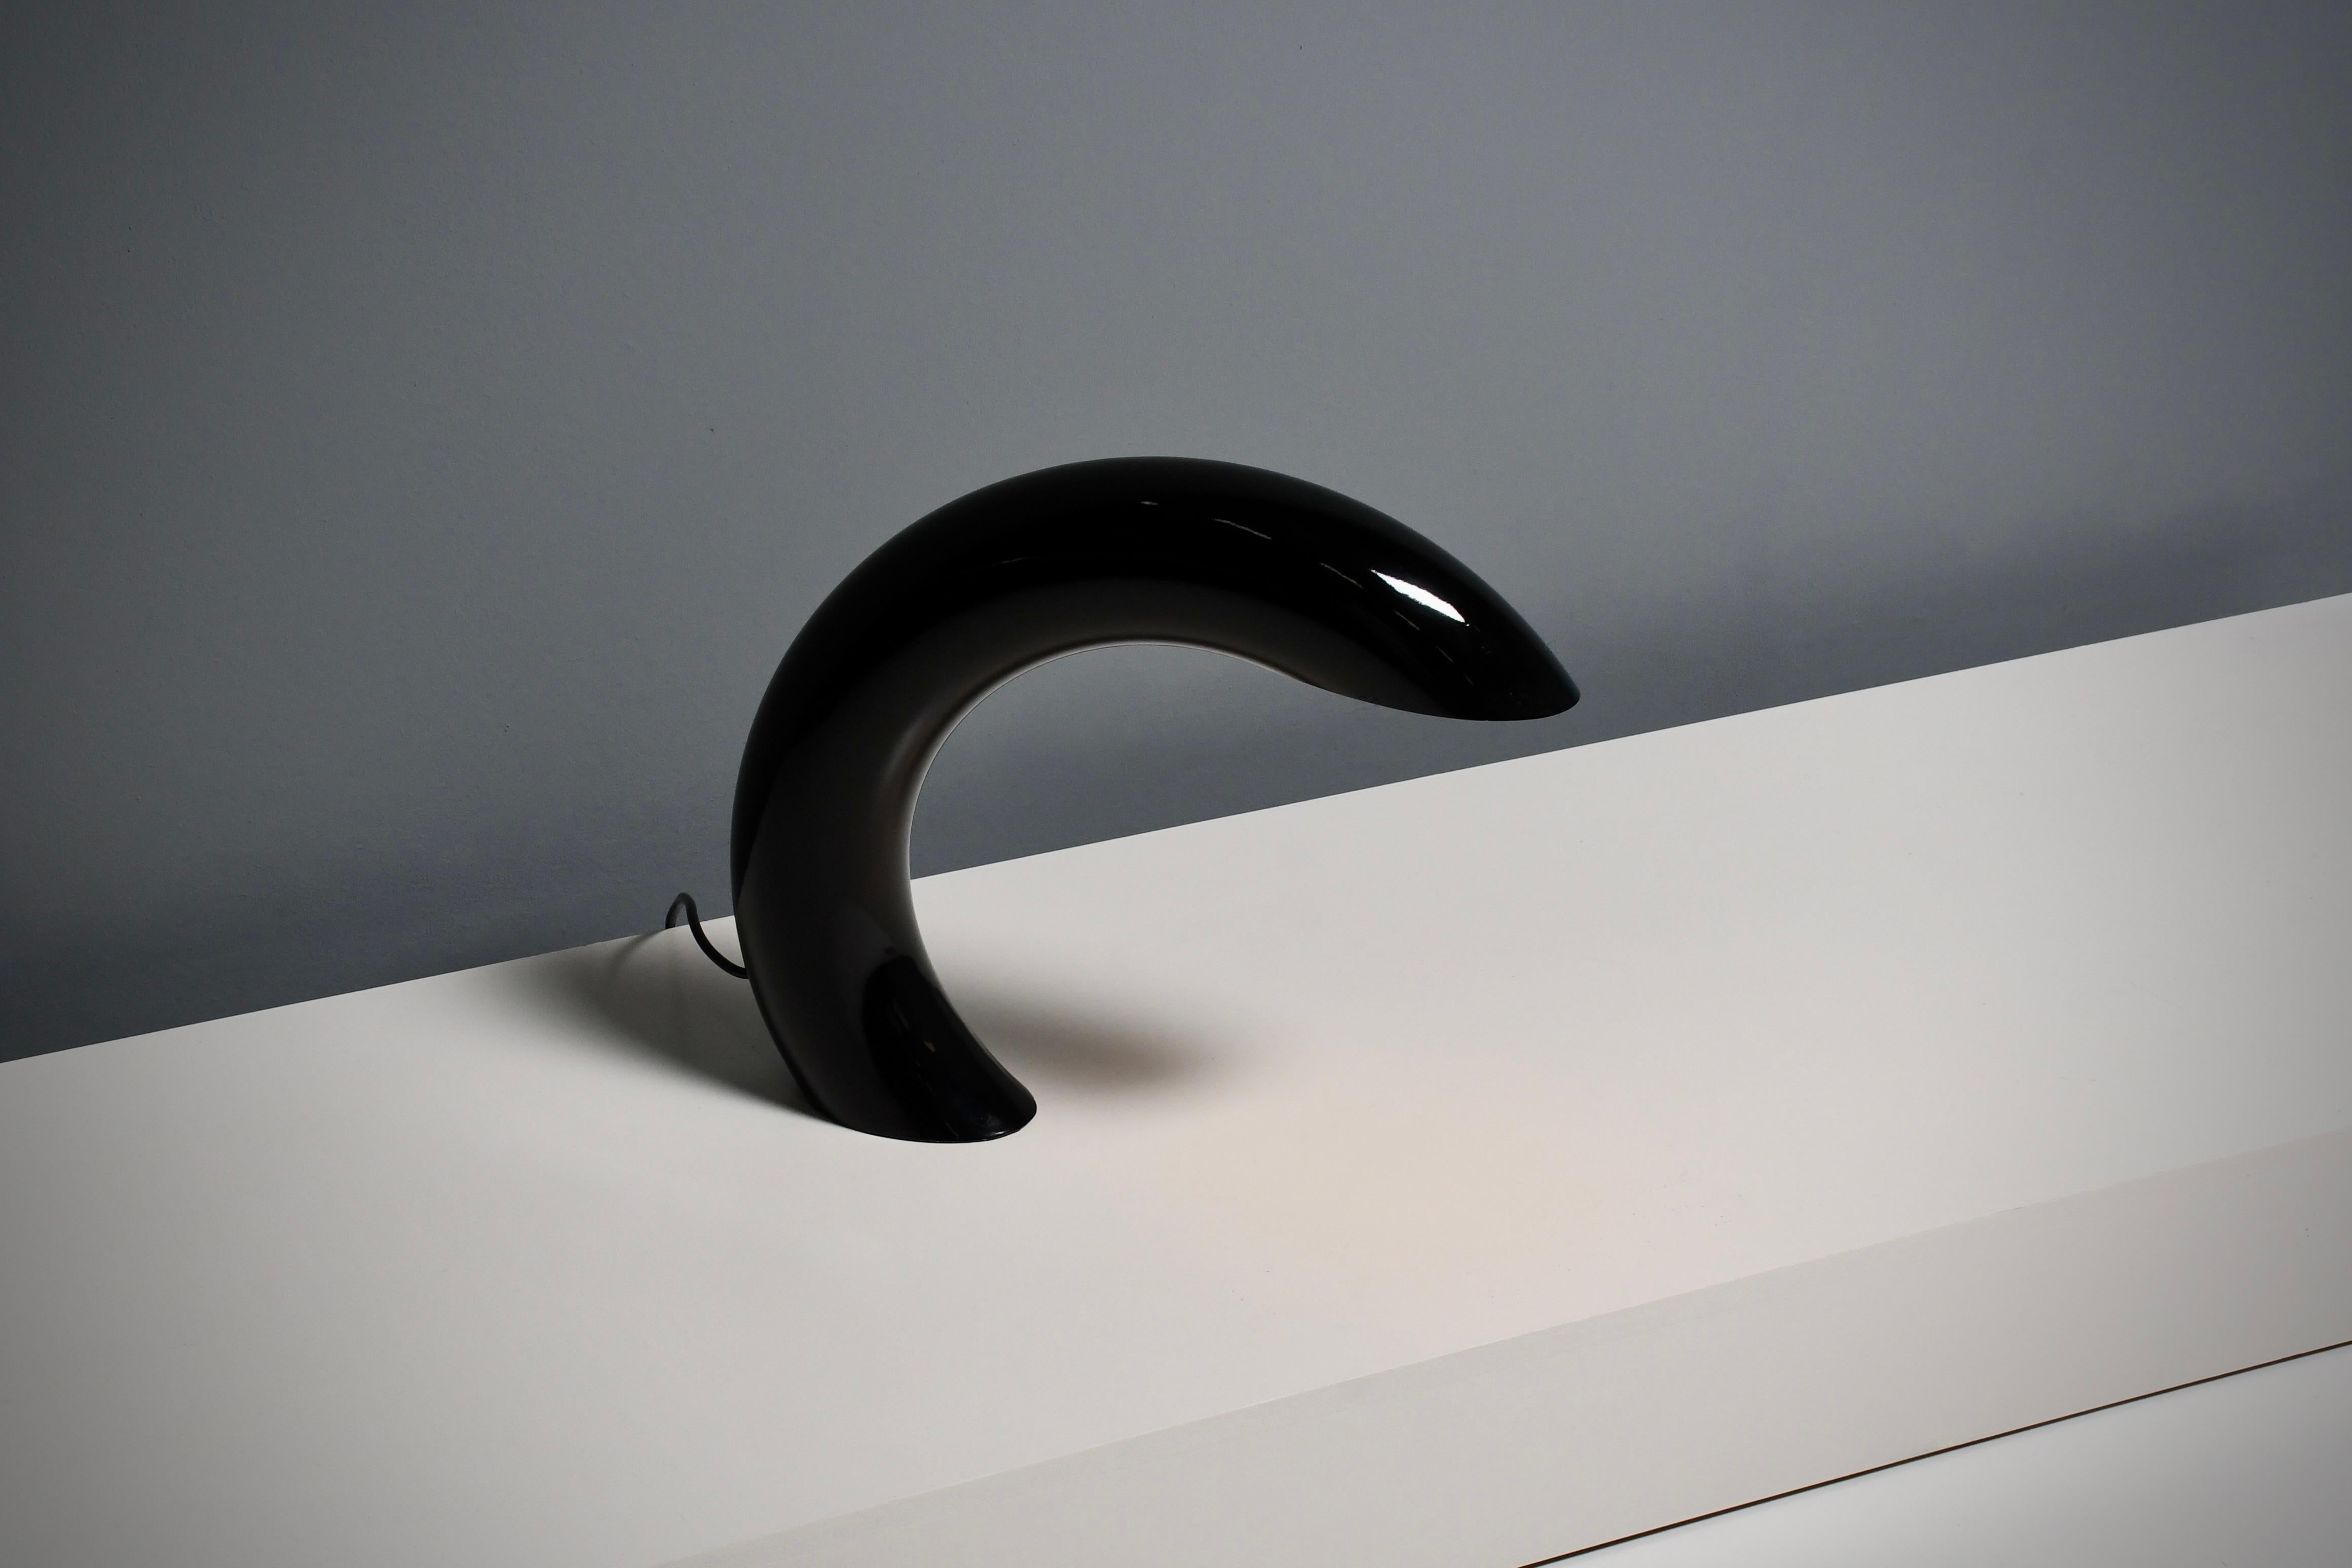 Lampe de table de forme sculpturale en très bon état.

Conçu par Georges Frydman, France, années 1960.

Cette lampe est un chef-d'œuvre d'élégance minimaliste. 
Fabriquée à partir d'un tube circulaire solide en aluminium moulé lourd, cette lampe de